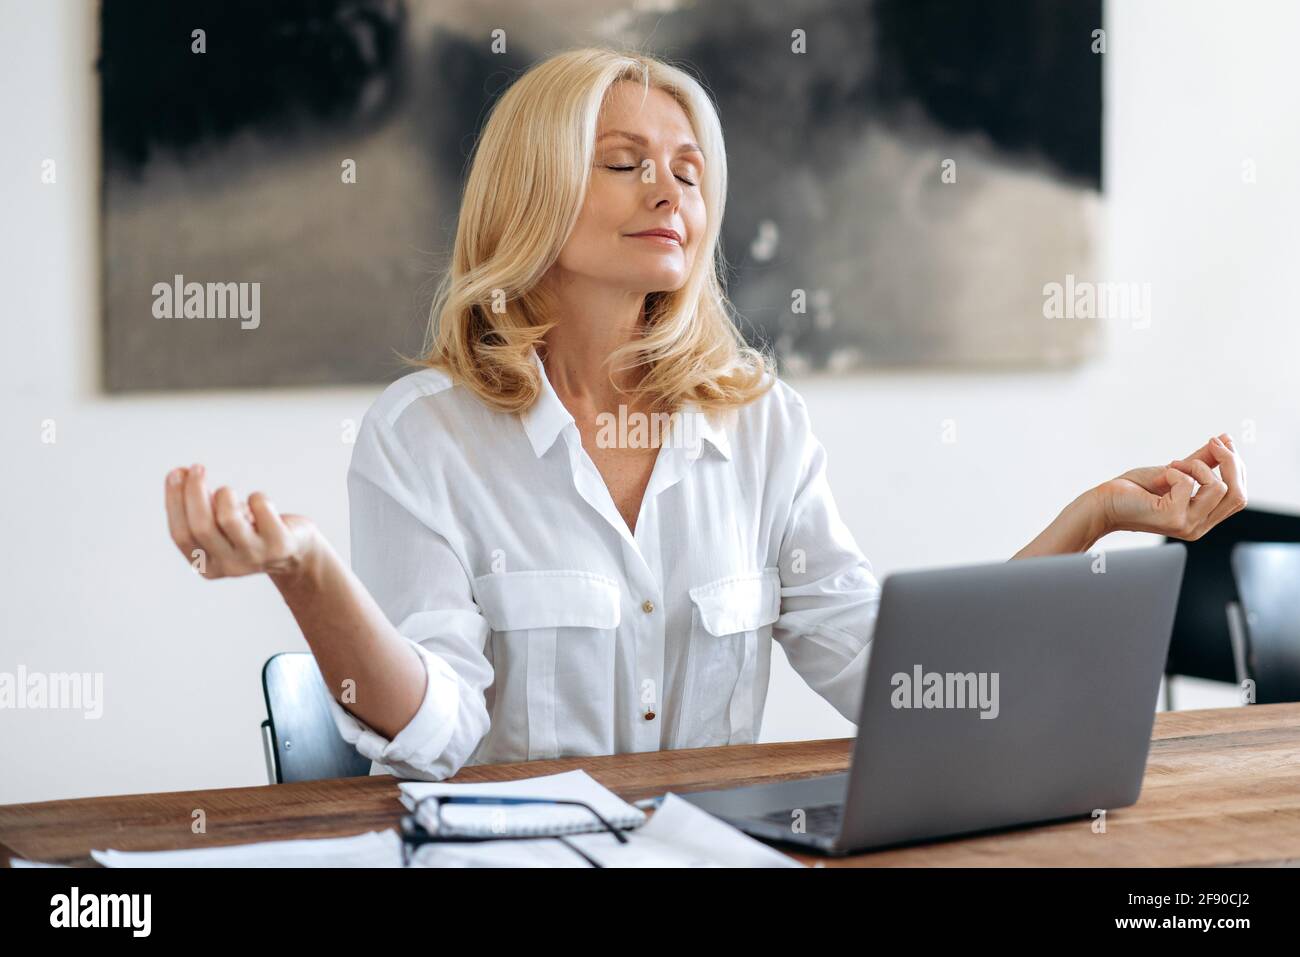 Schöne, erfolgreiche, entspannte, reife blonde Frau, Topmanagerin, Maklerin oder Freiberuflerin, in einem weißen Hemd, die am Laptop arbeitet, sitzt an einem Schreibtisch, ruht sich in einer Meditationhaltung aus, die Augen geschlossen, das Konzept der Ruhe Stockfoto